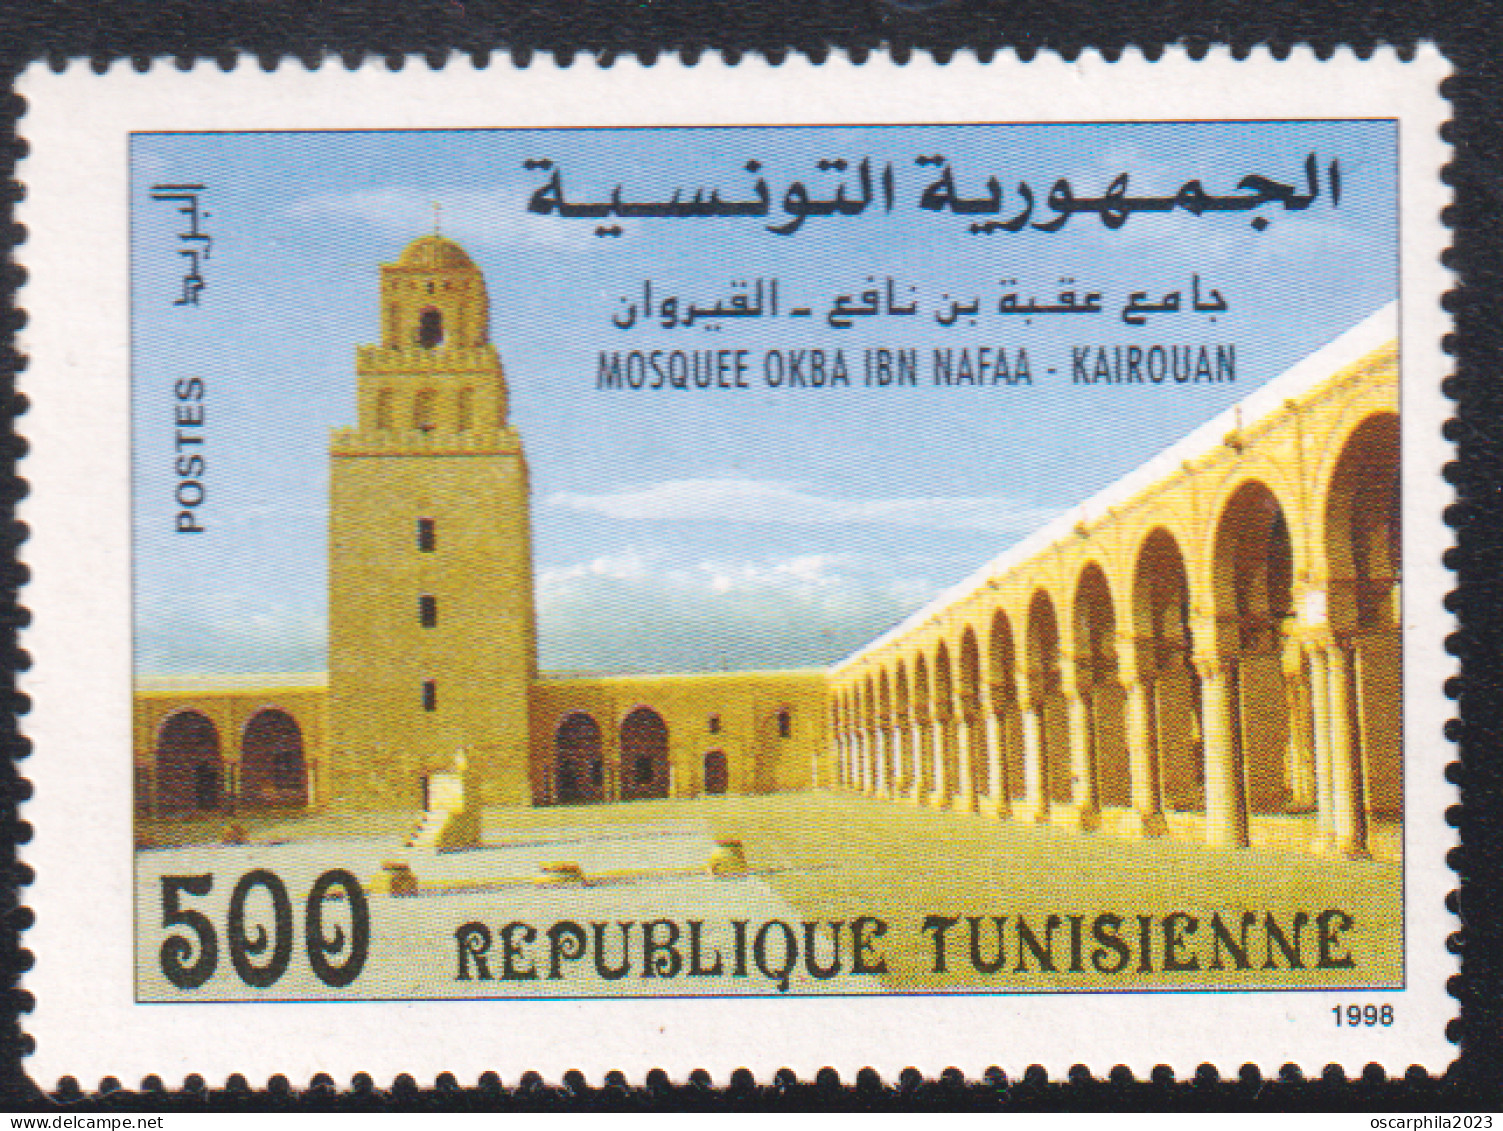 1998 - Tunisie - Y & T 1331 -  Mosquée Okba Ibn Nafaâ - Kairouan -  1V   MNH***** - Mosquées & Synagogues